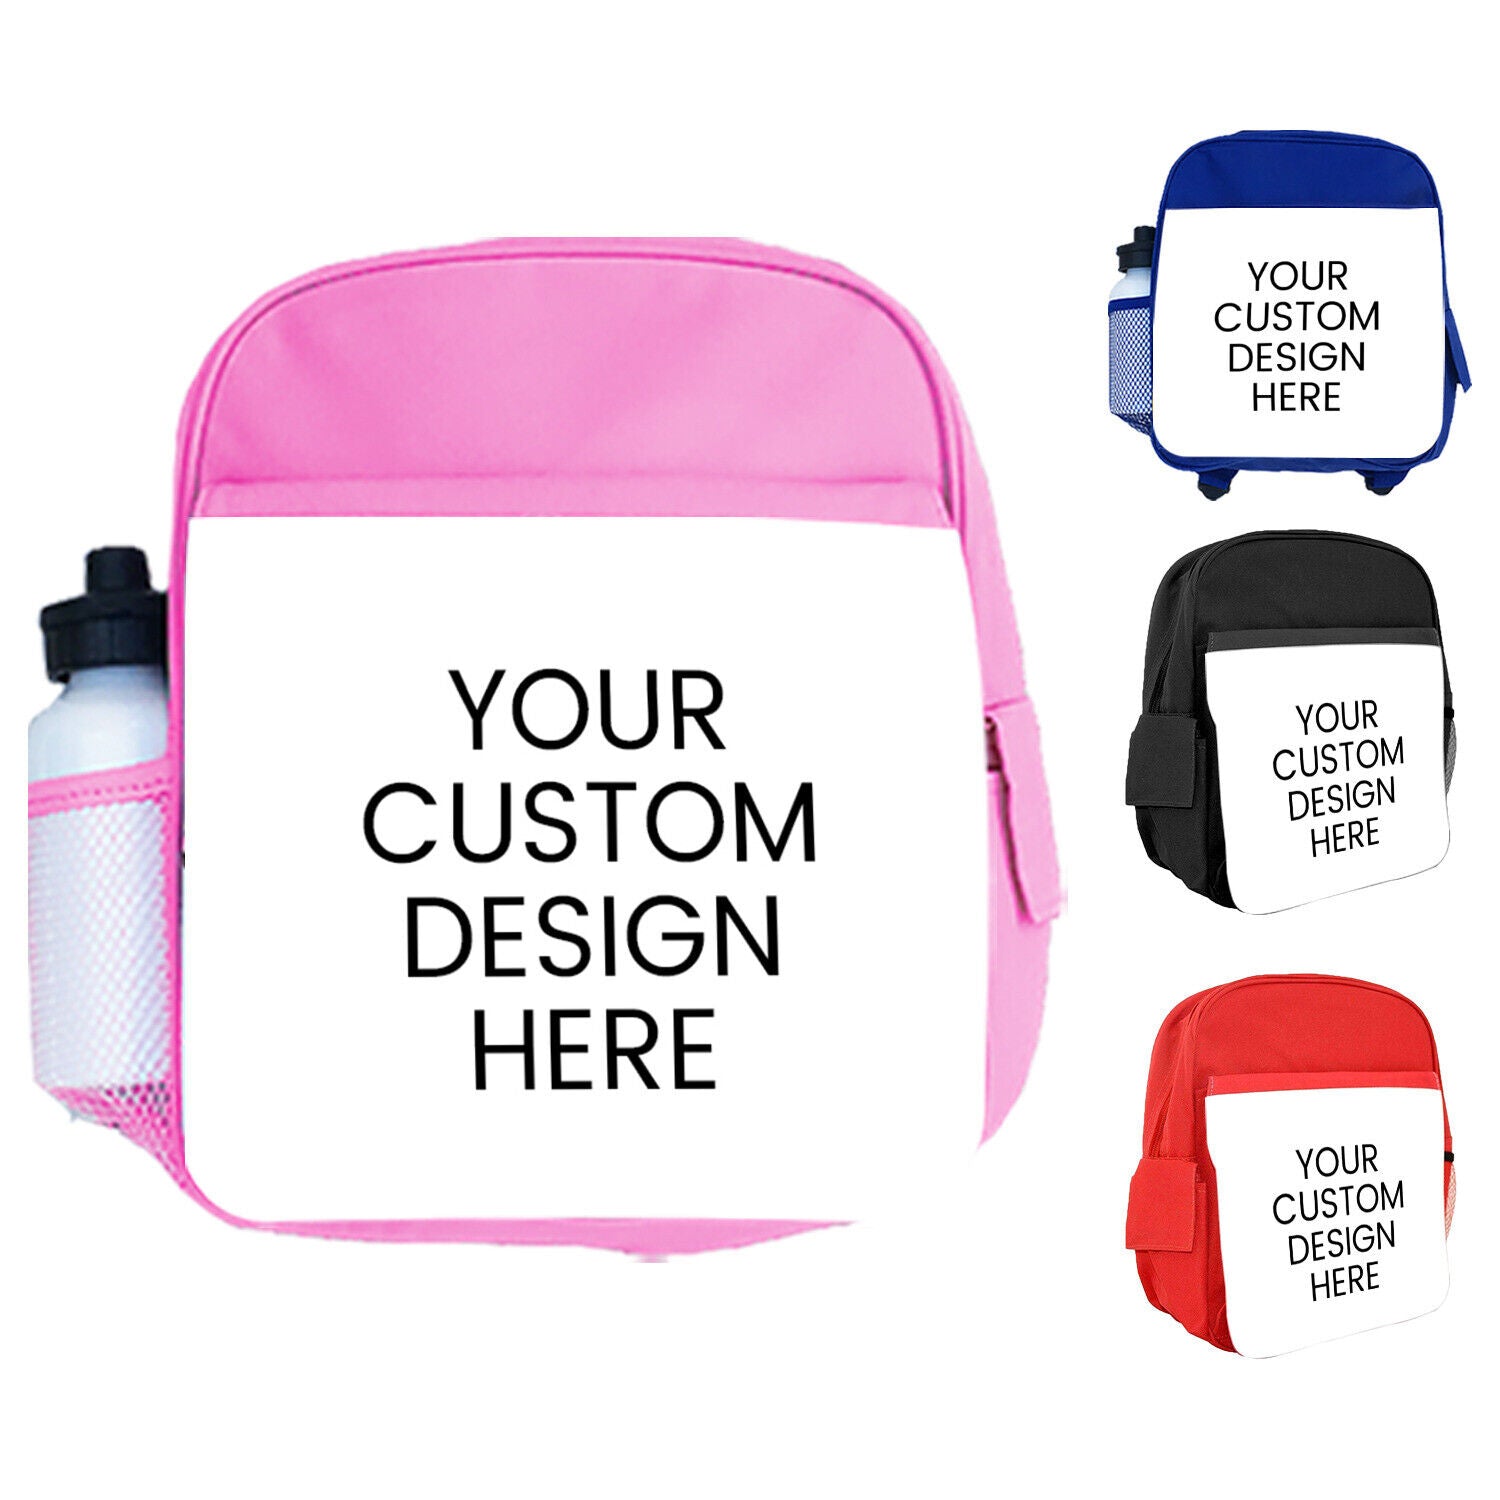 Personalised Kids Backpack Any Name Generic Design Boys Girls kid School Bag 24